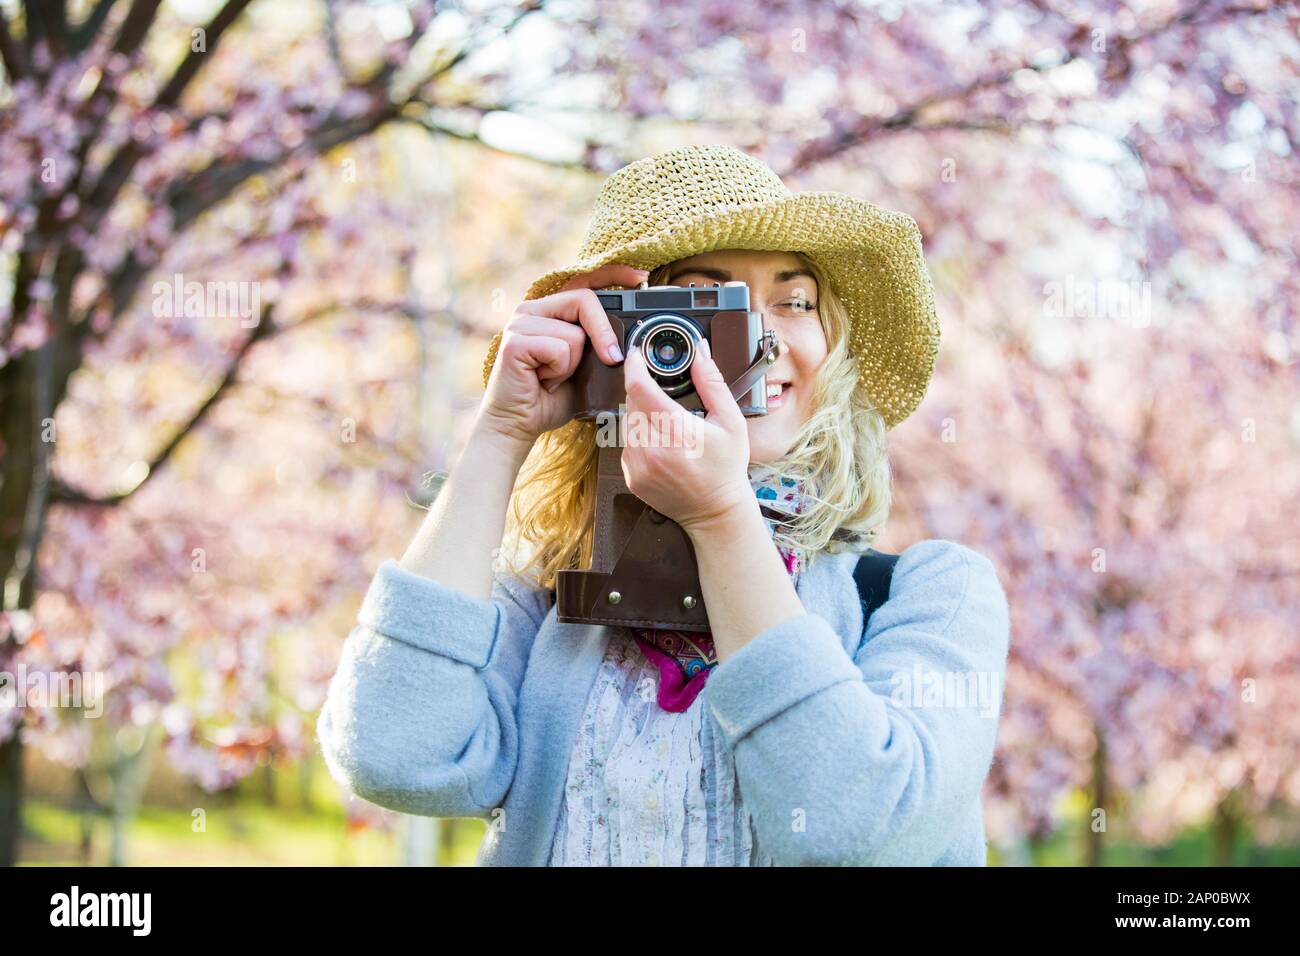 Portrait d'une belle femme dans un chapeau de paille voyageant dans un beau parc avec des cerisiers en fleurs, prenant des photos sur un appareil photo rétro. Tourisme avec sac à dos Banque D'Images